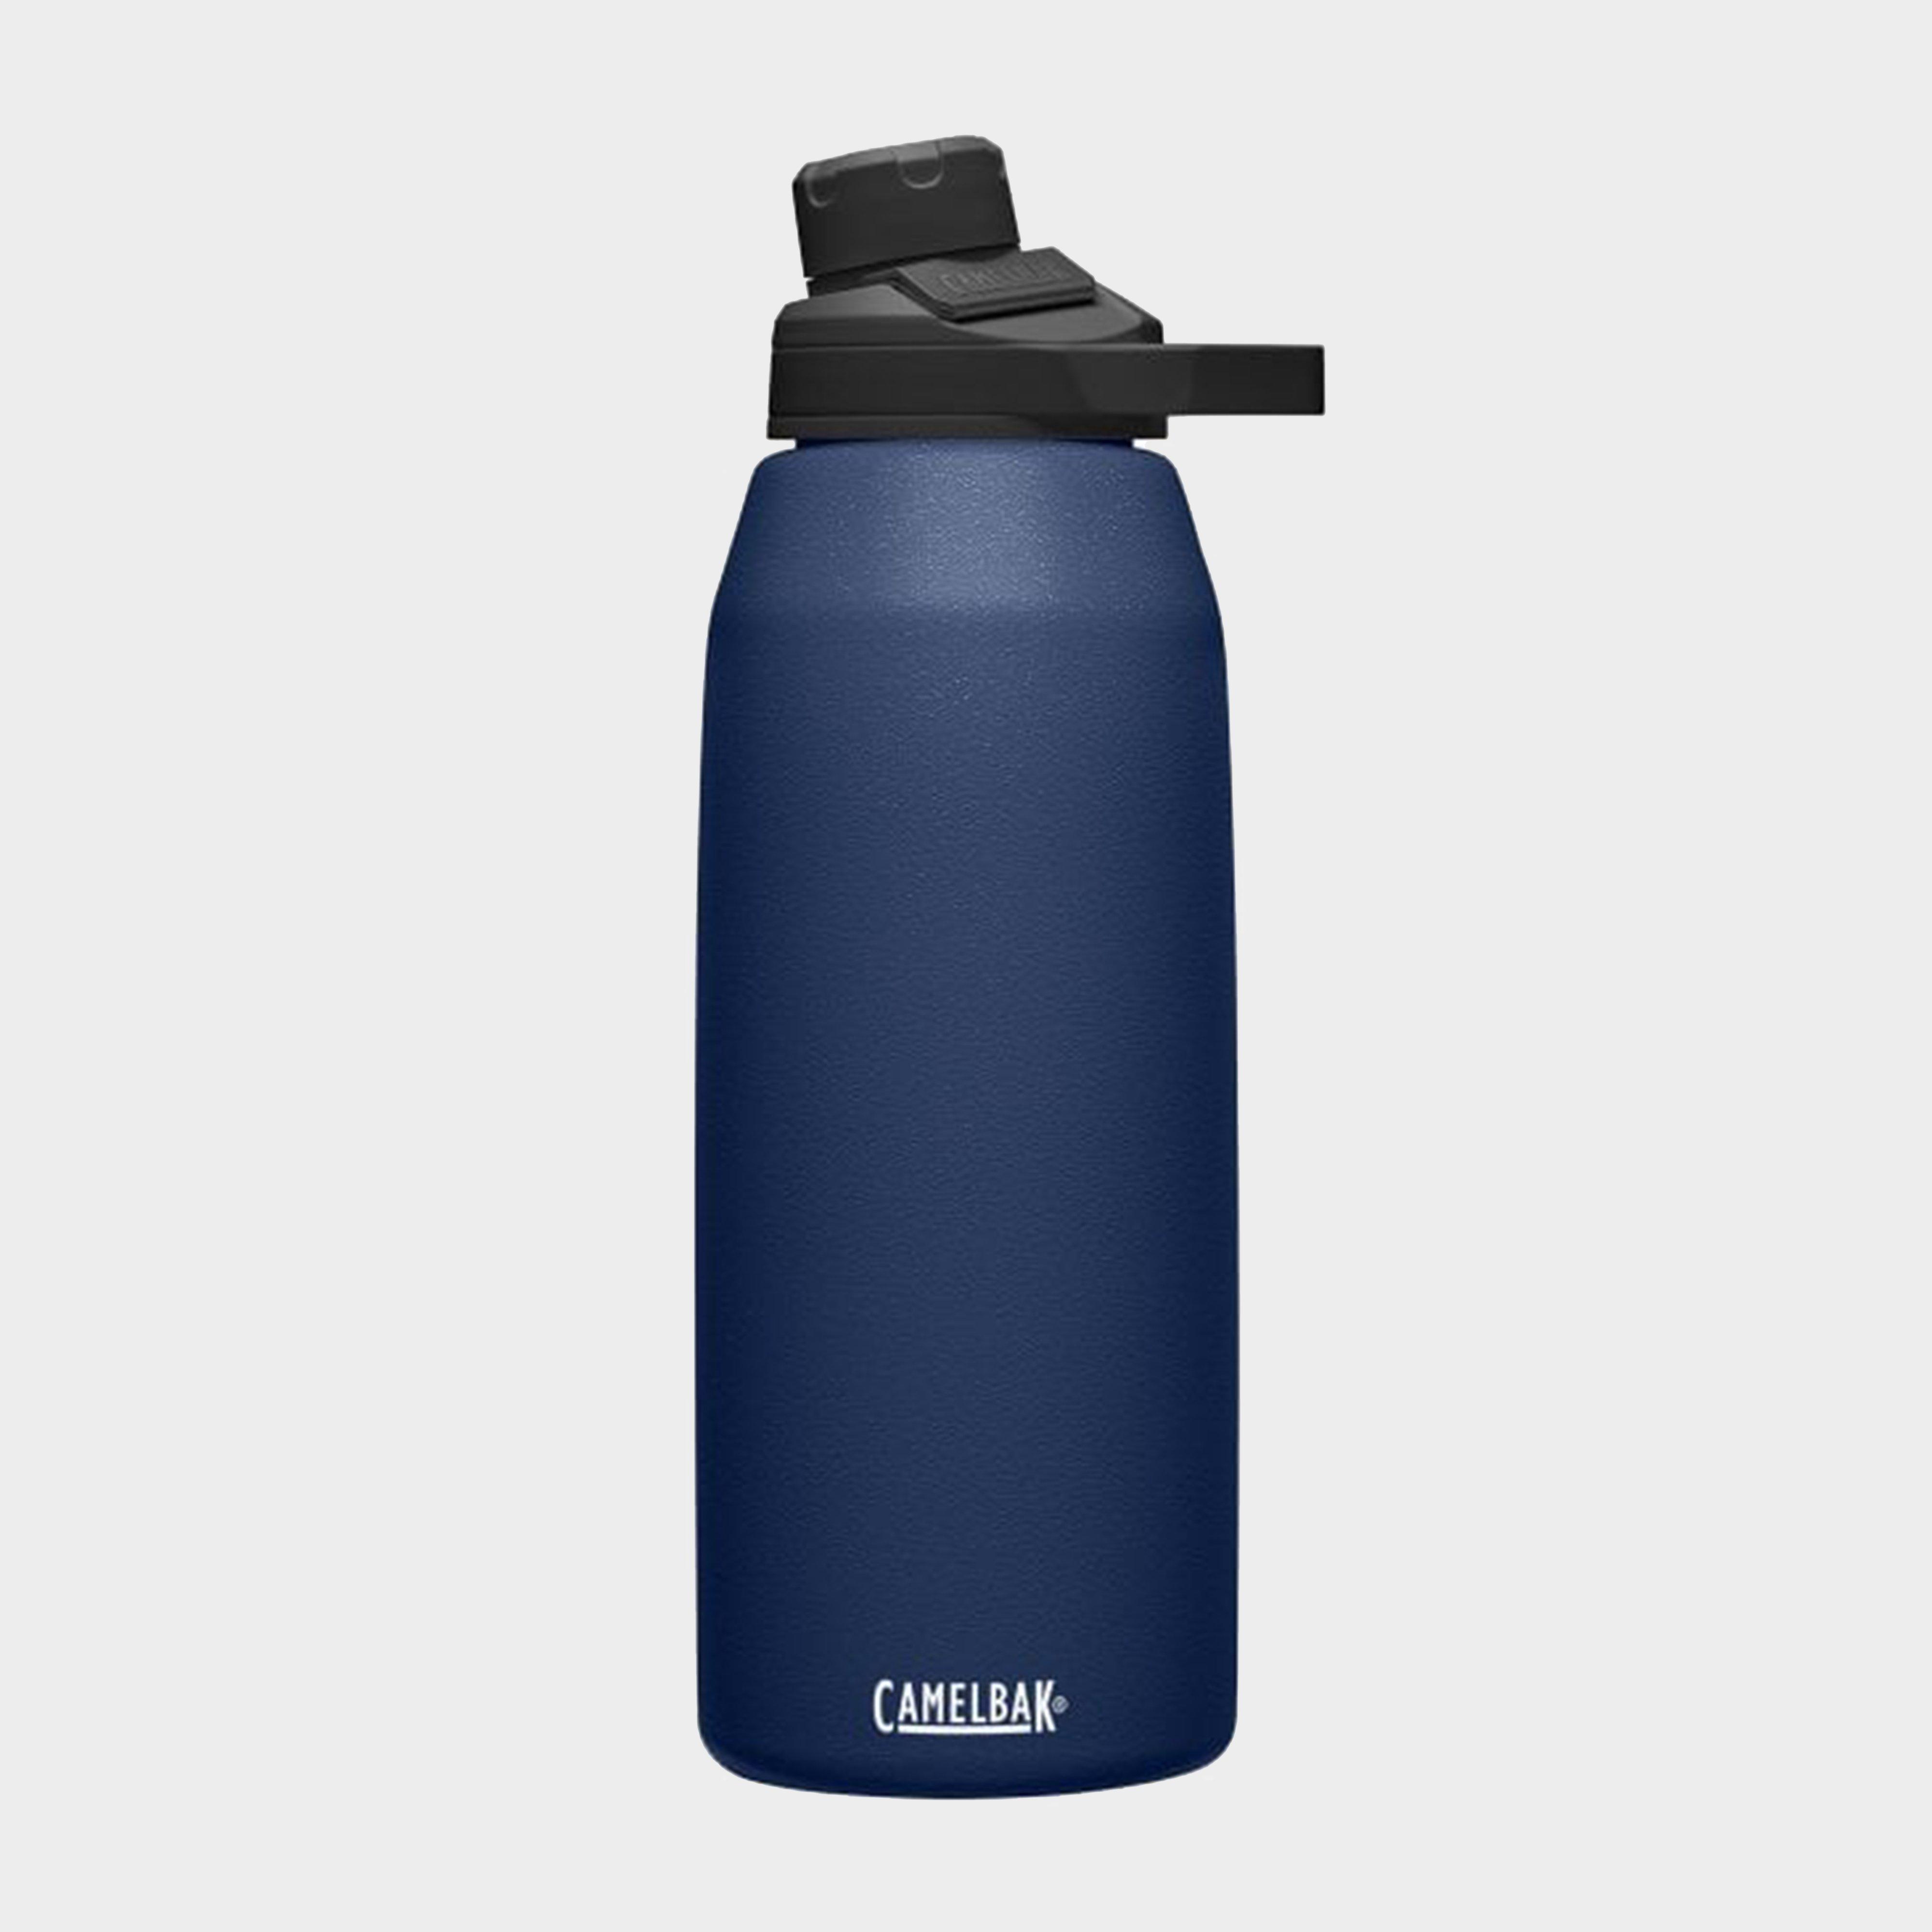 Camelbak Camelbak Chute® Mag Vacuum Bottle 1.2 Litre - Navy, Navy